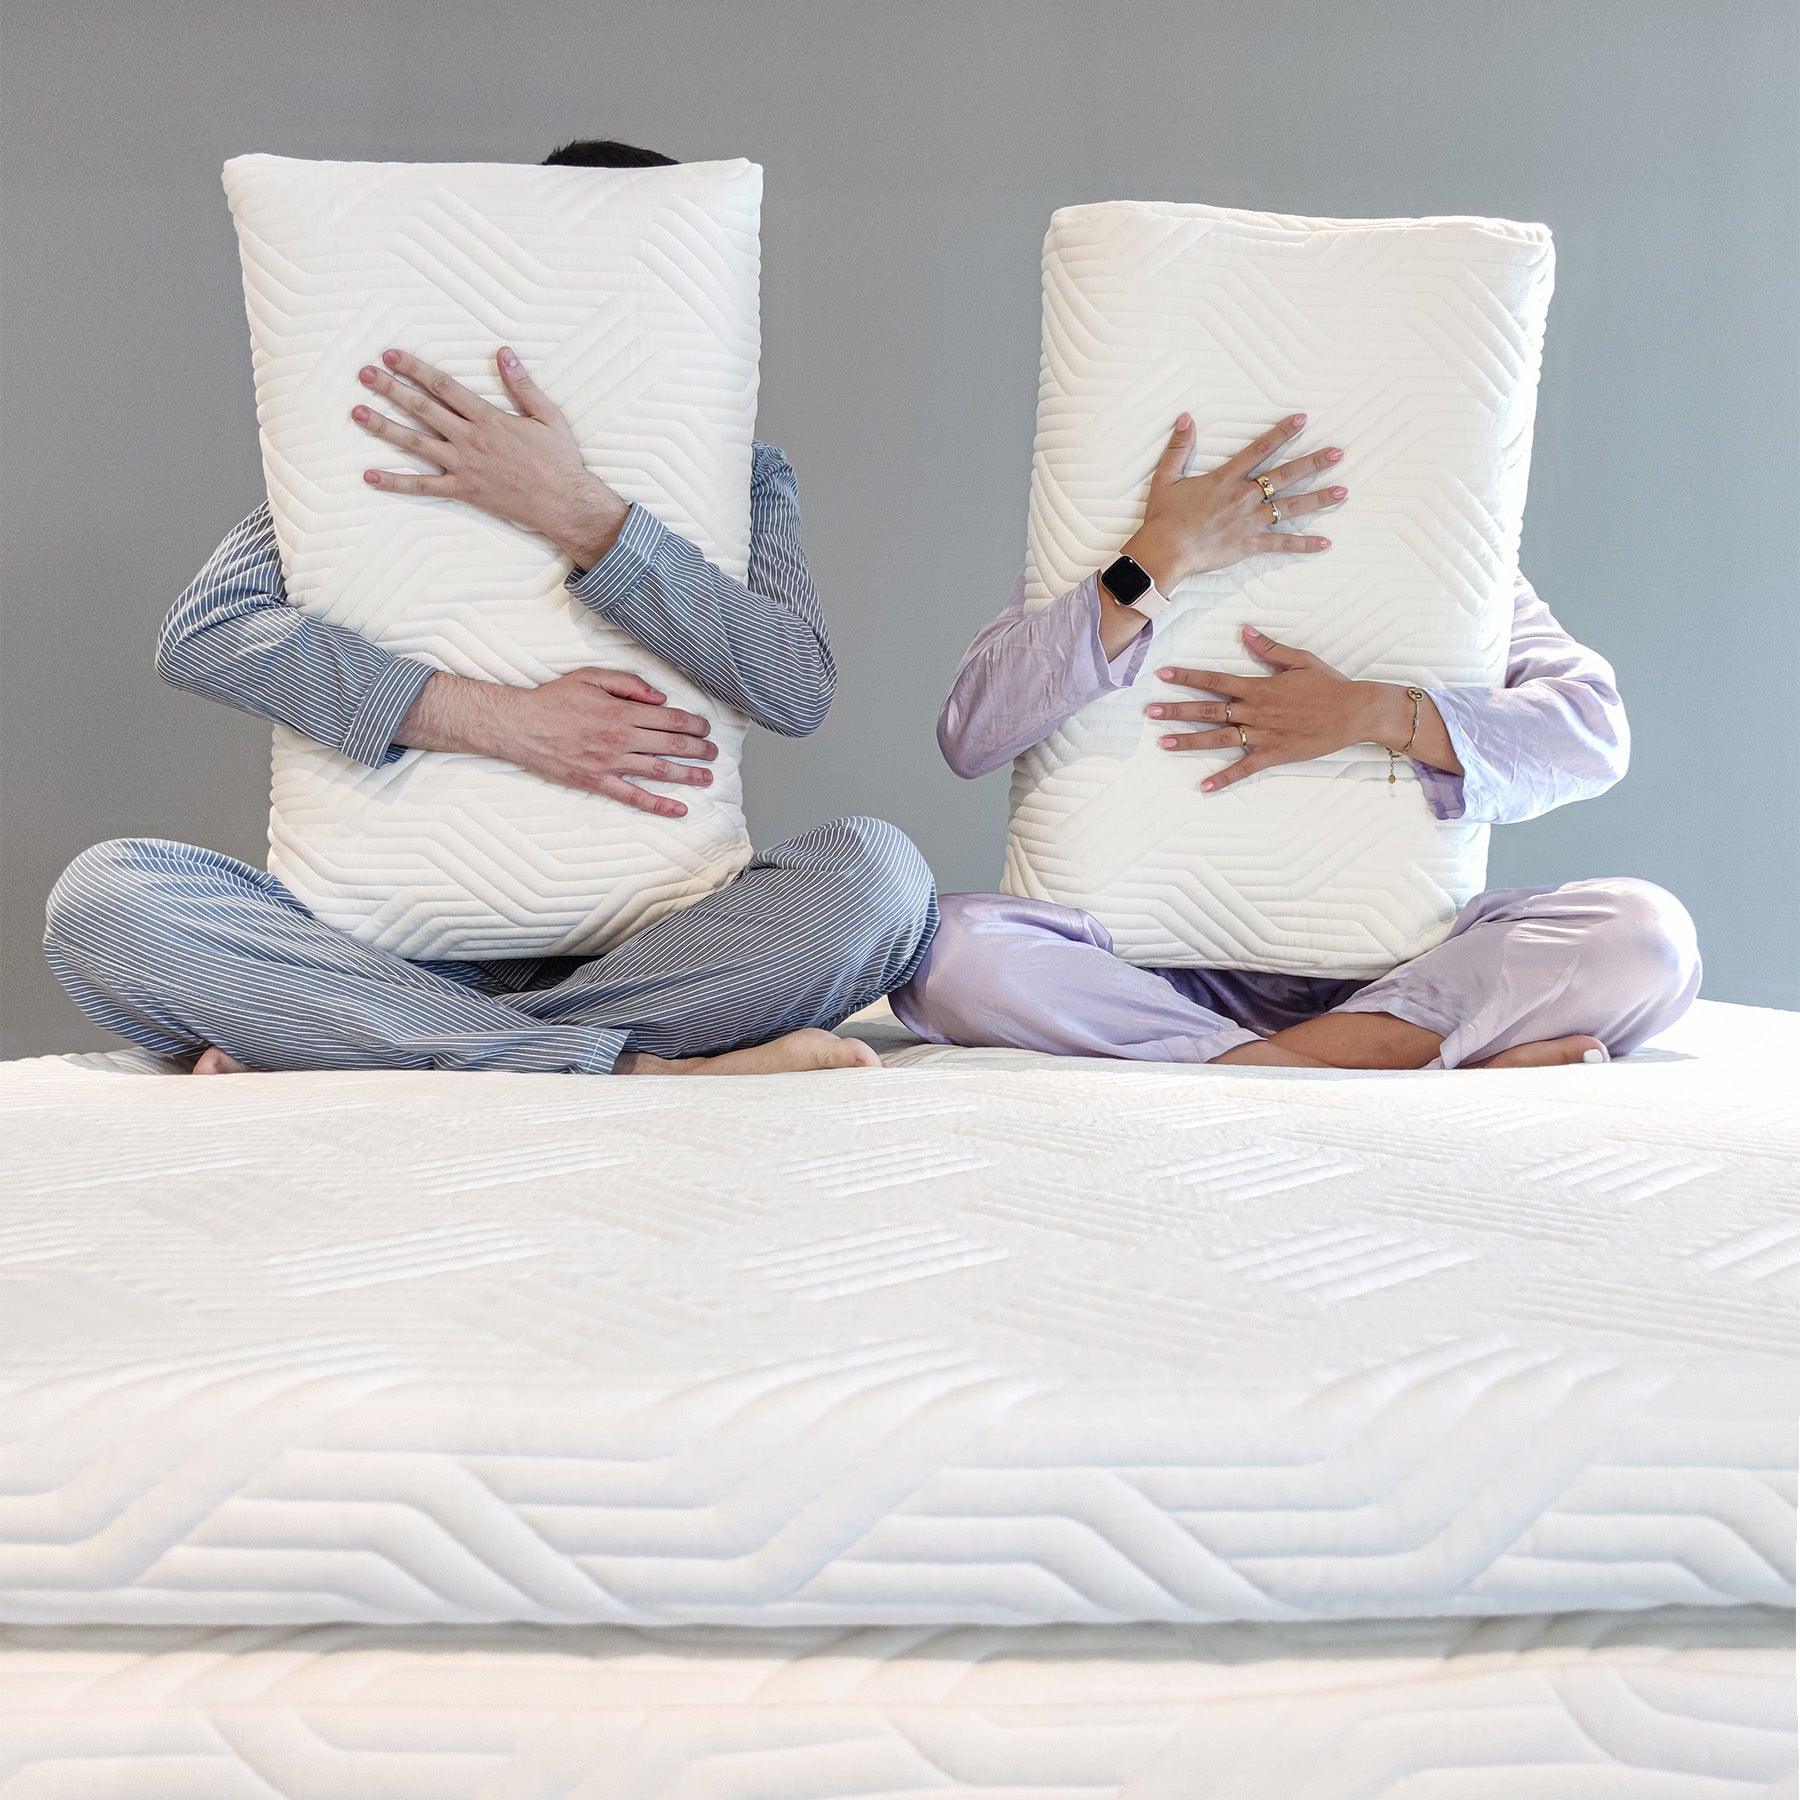 Ragazzi abbracciano i cuscini Donizetti cervicale in Watergel, perfetti per alleviare la tensione del collo